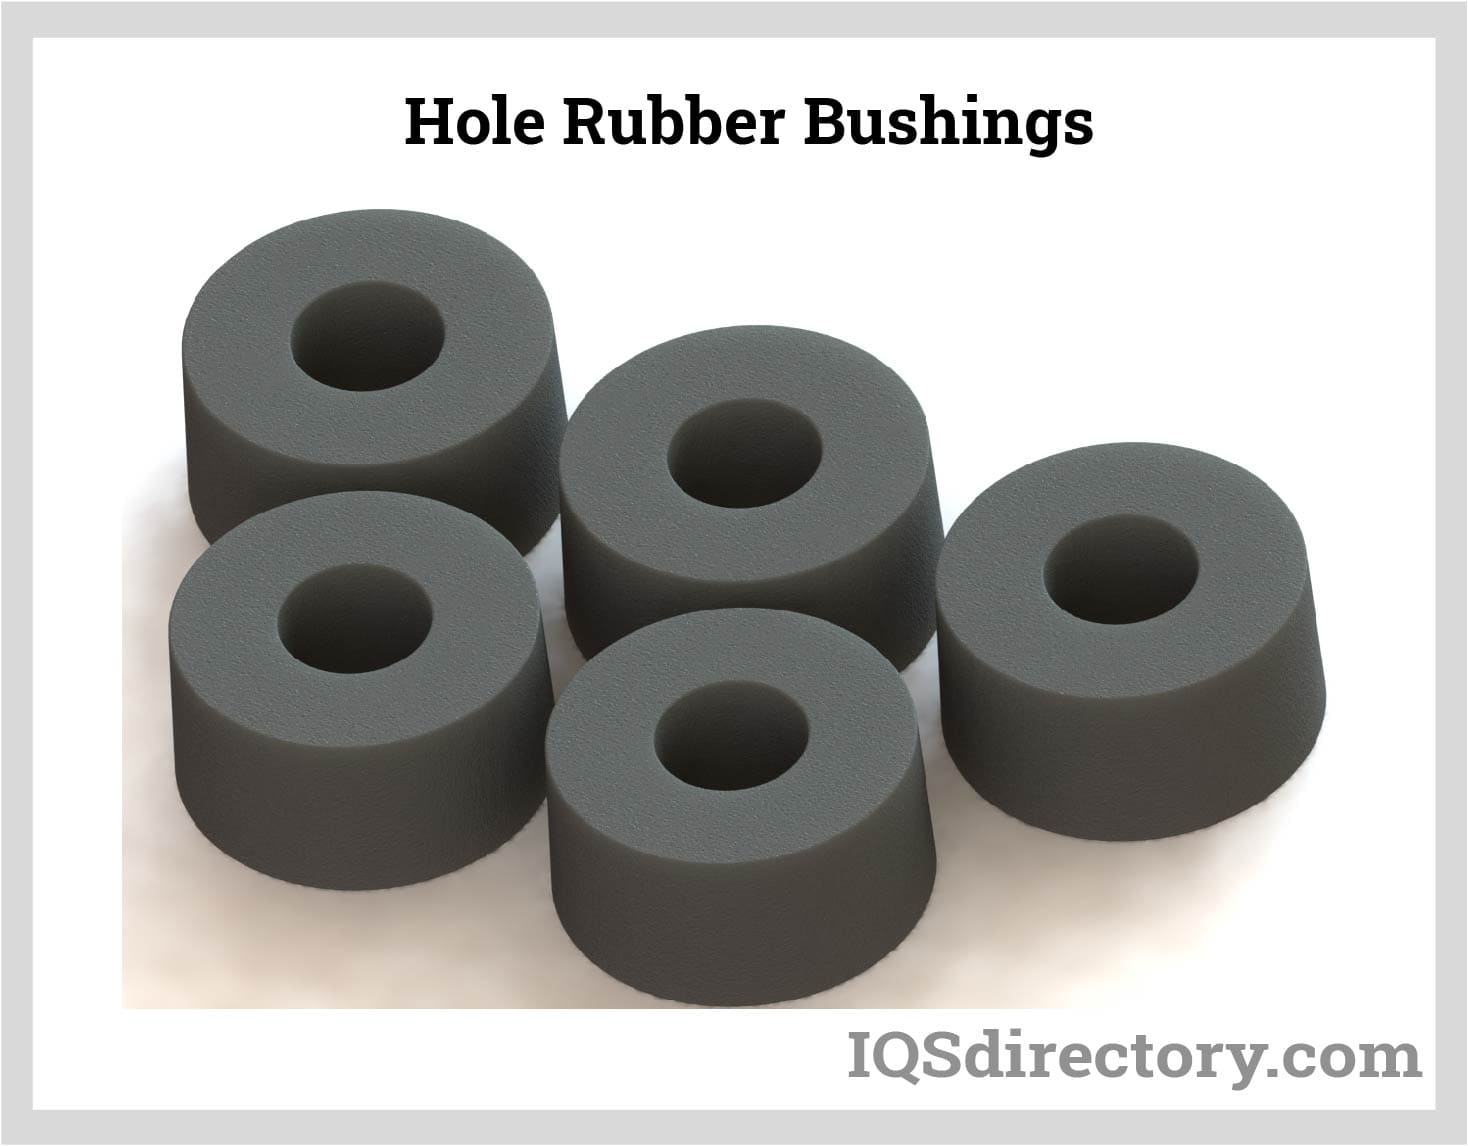 Hole Rubber Bushings